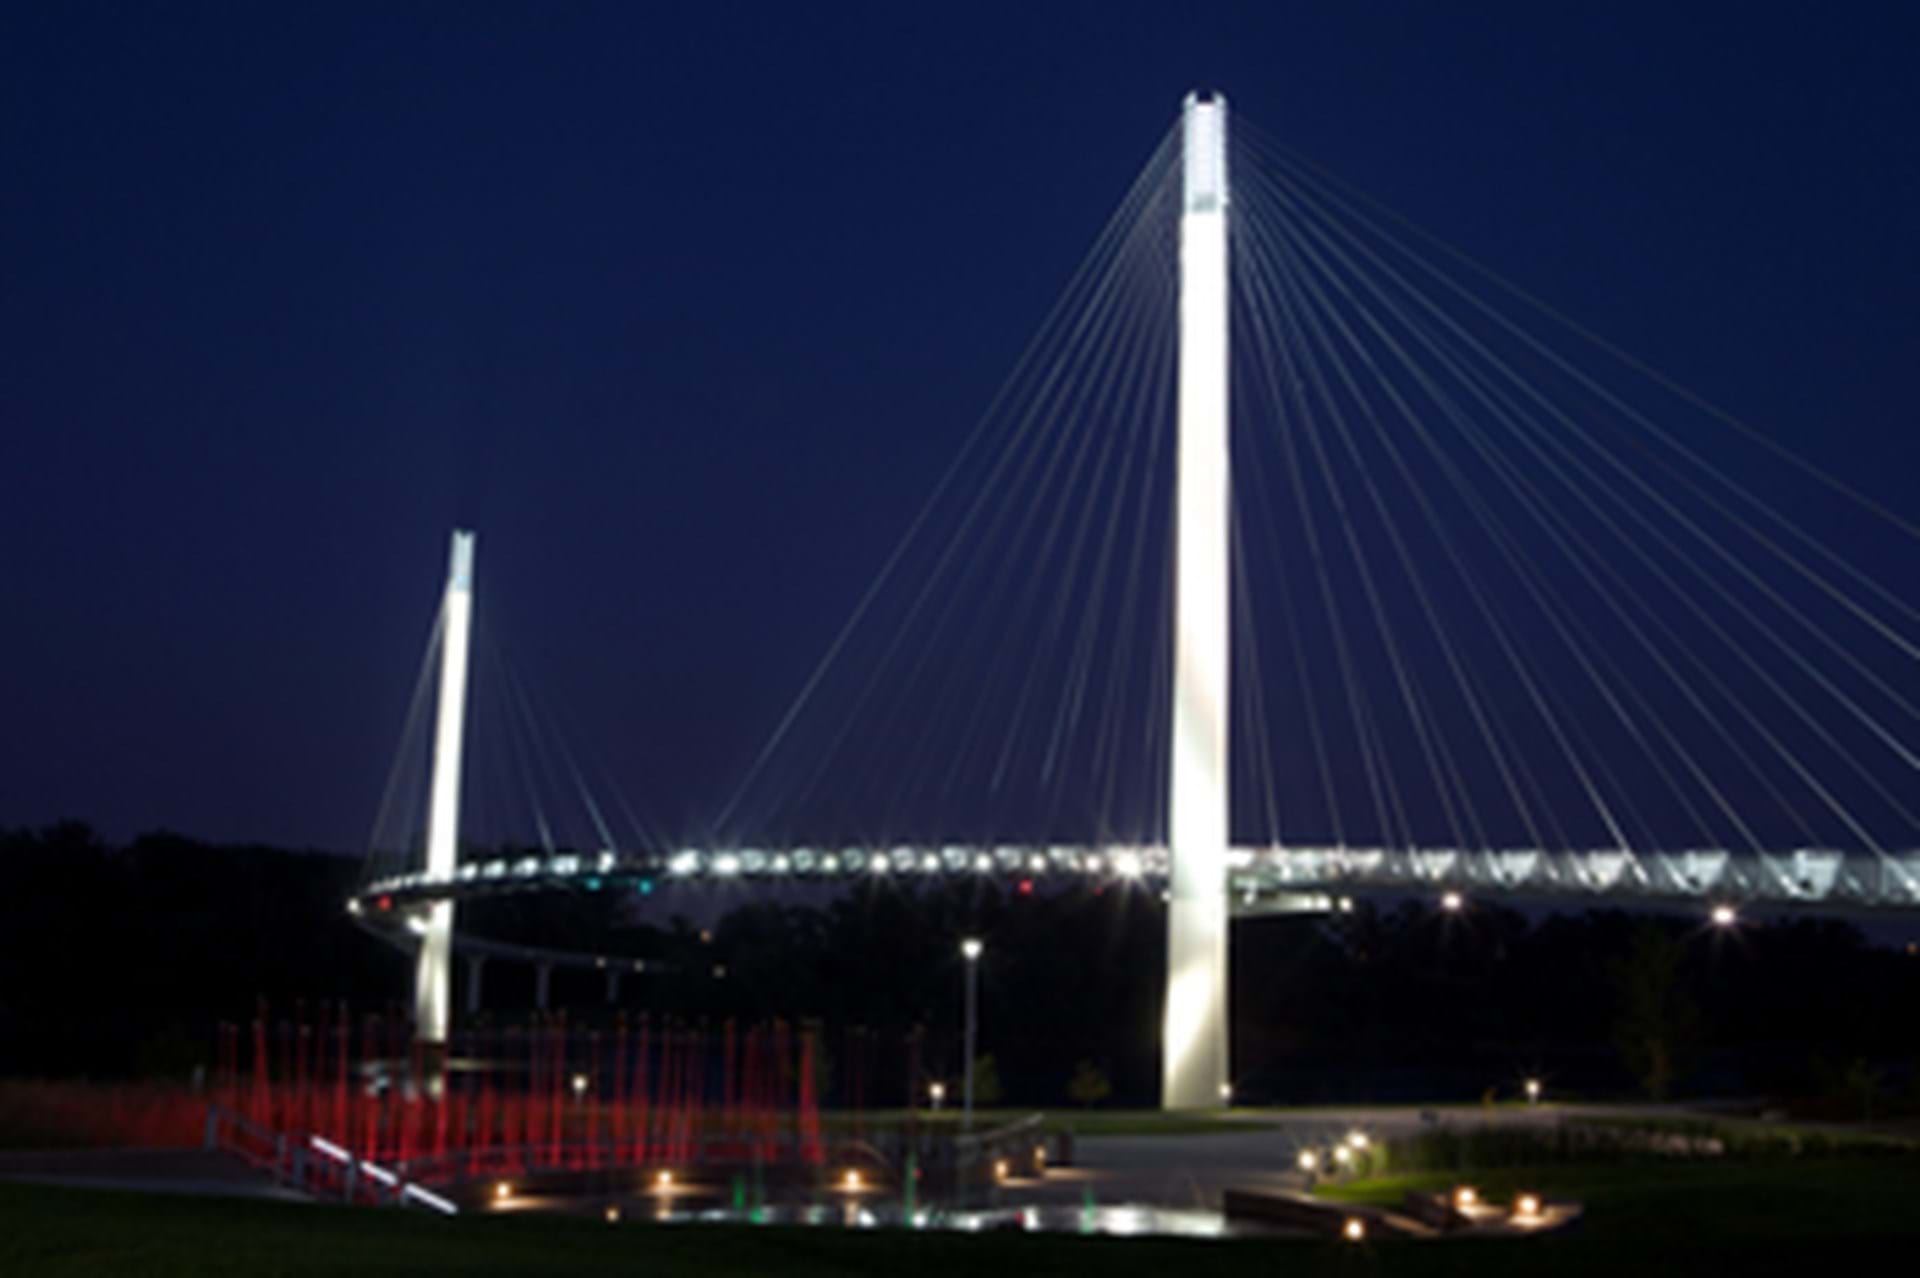 Bob Kerrey Pedestrian Bridge over the Missouri River